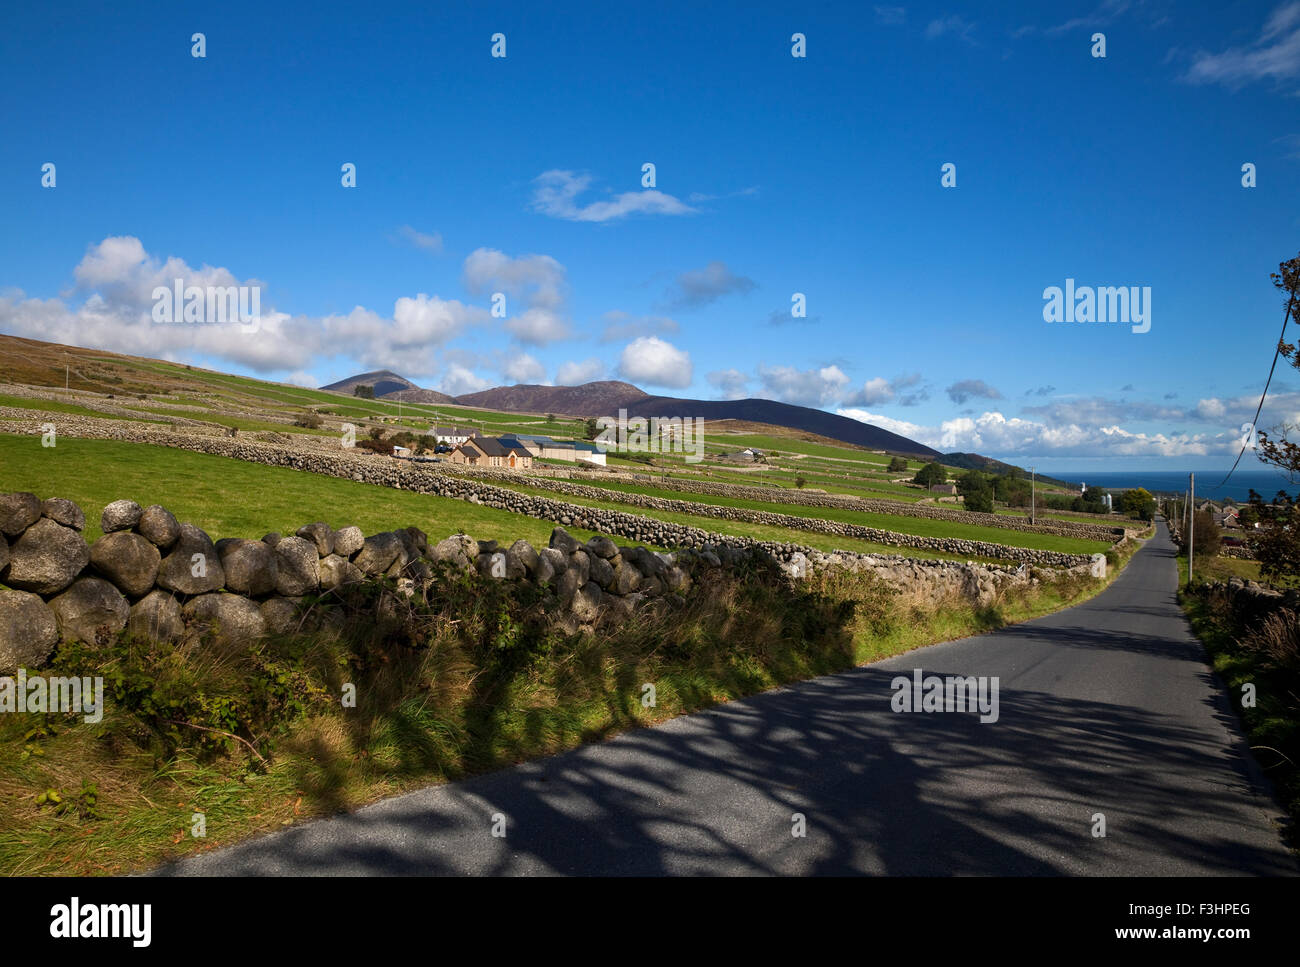 Les terres agricoles, des murs en pierre au milieu des montagnes de Mourne, près de Kilkeel sur les Silent Valley Road, comté de Down, Irlande Banque D'Images